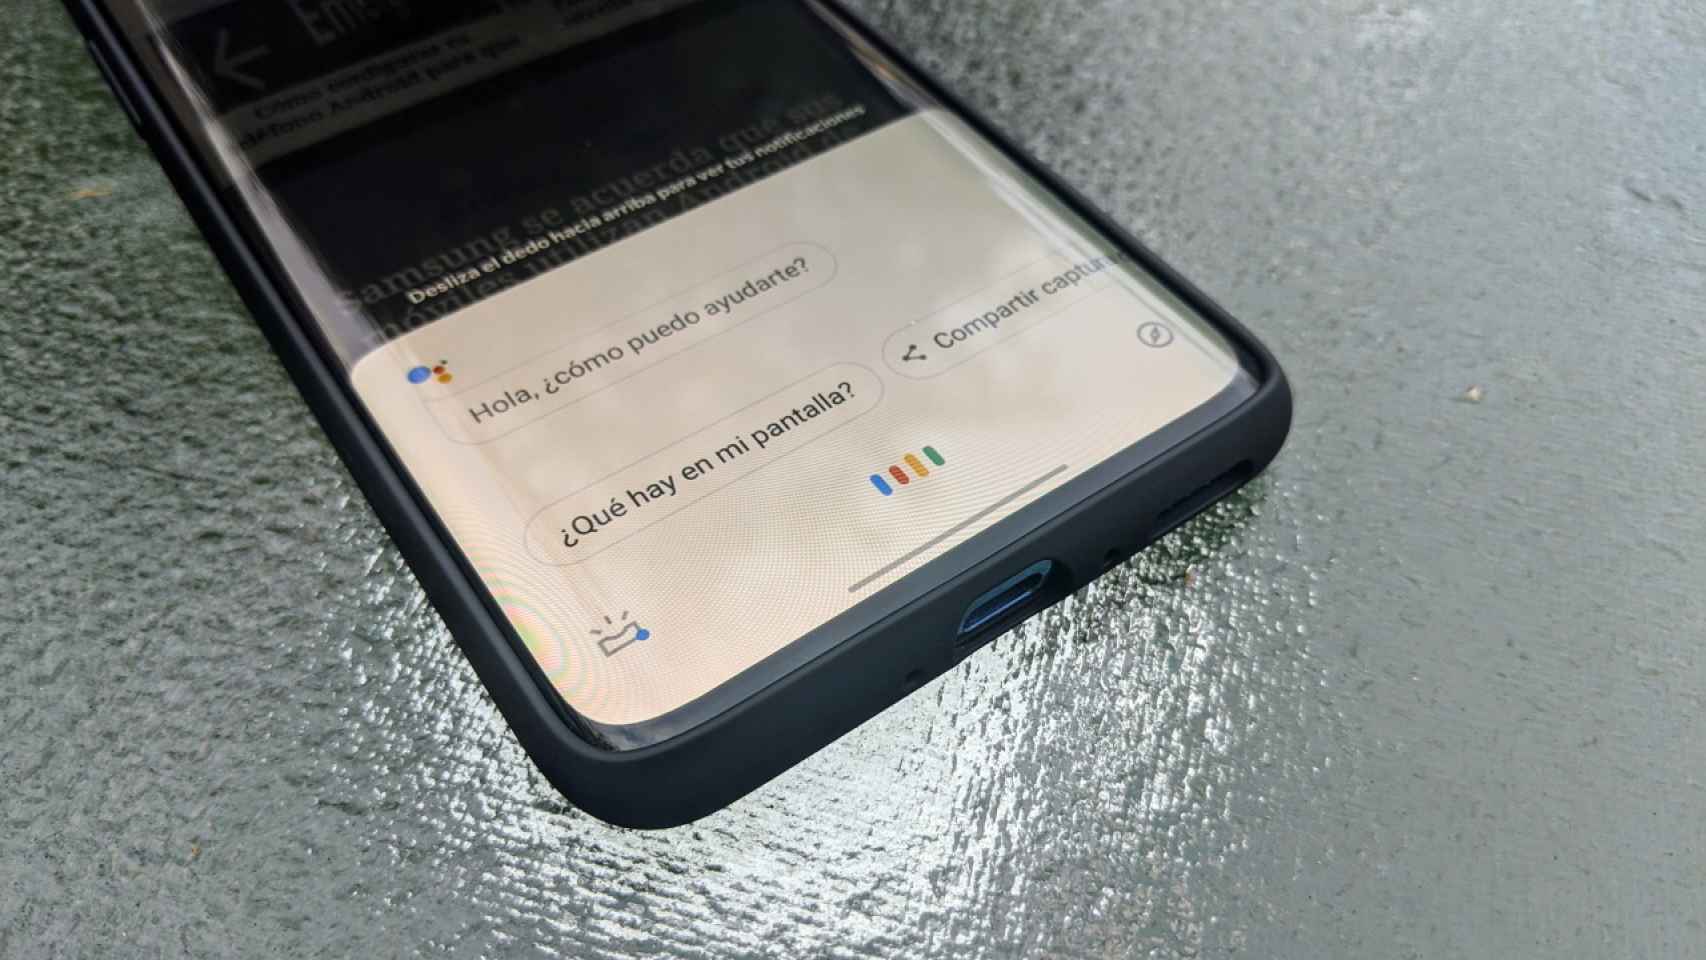 Google Assistant no responde: Cómo solucionarlo